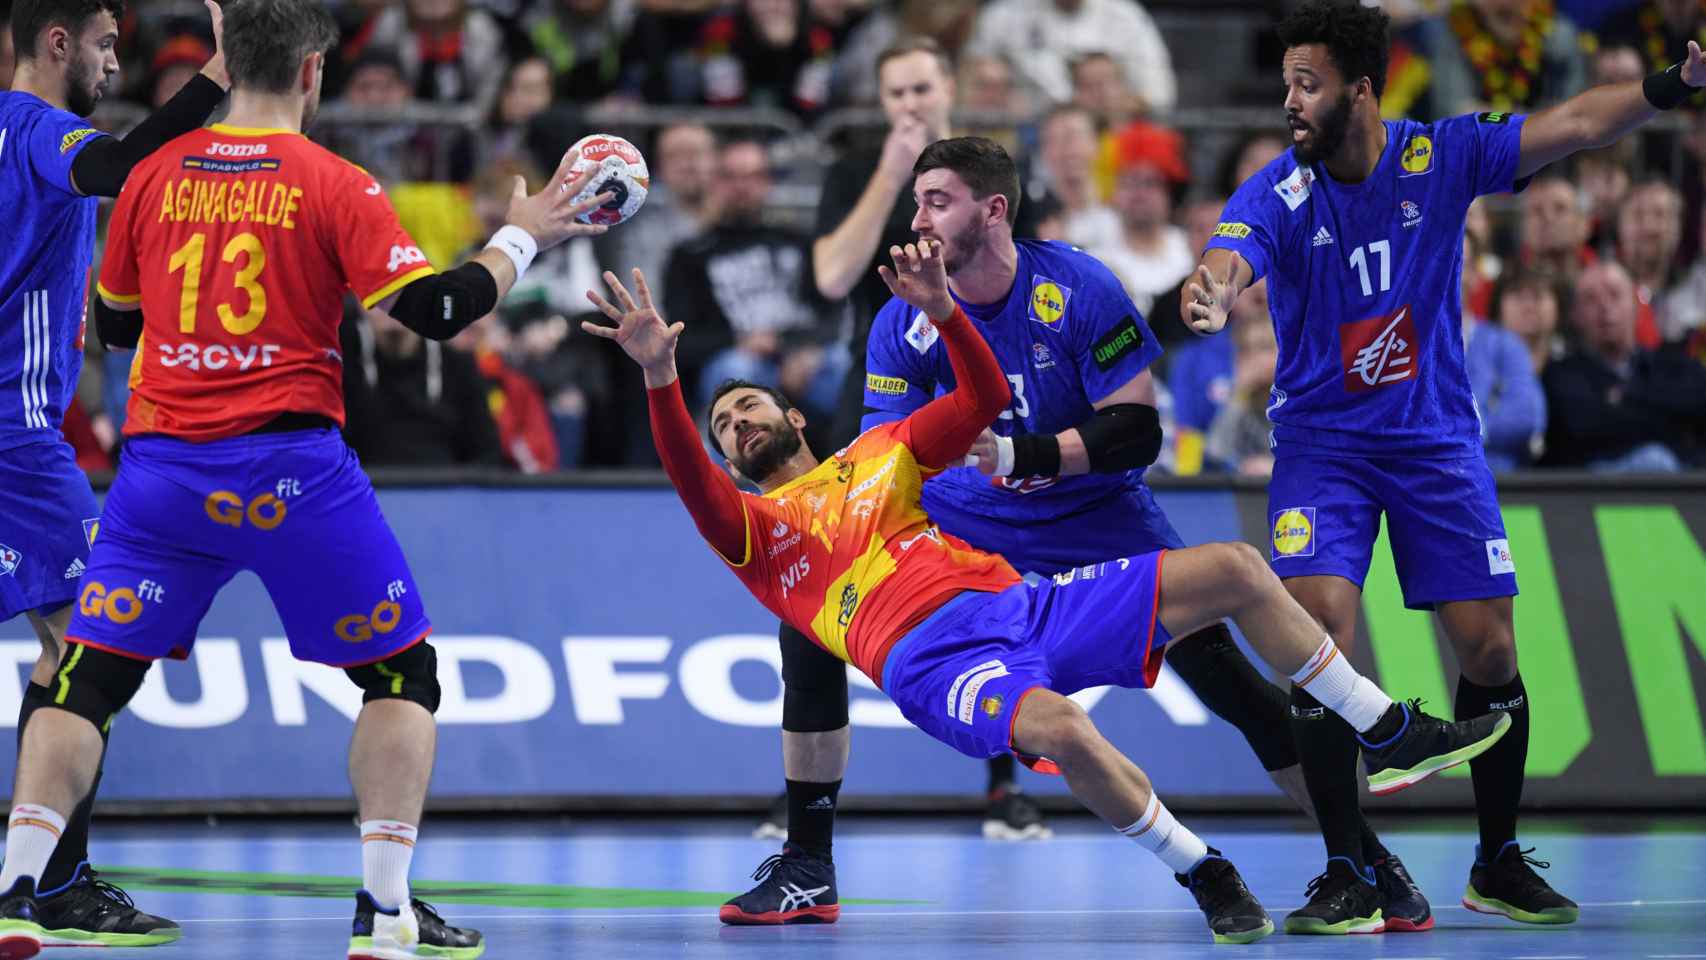 La selección española, frustrada para superar la defensa francesa en el Mundial de balonmano